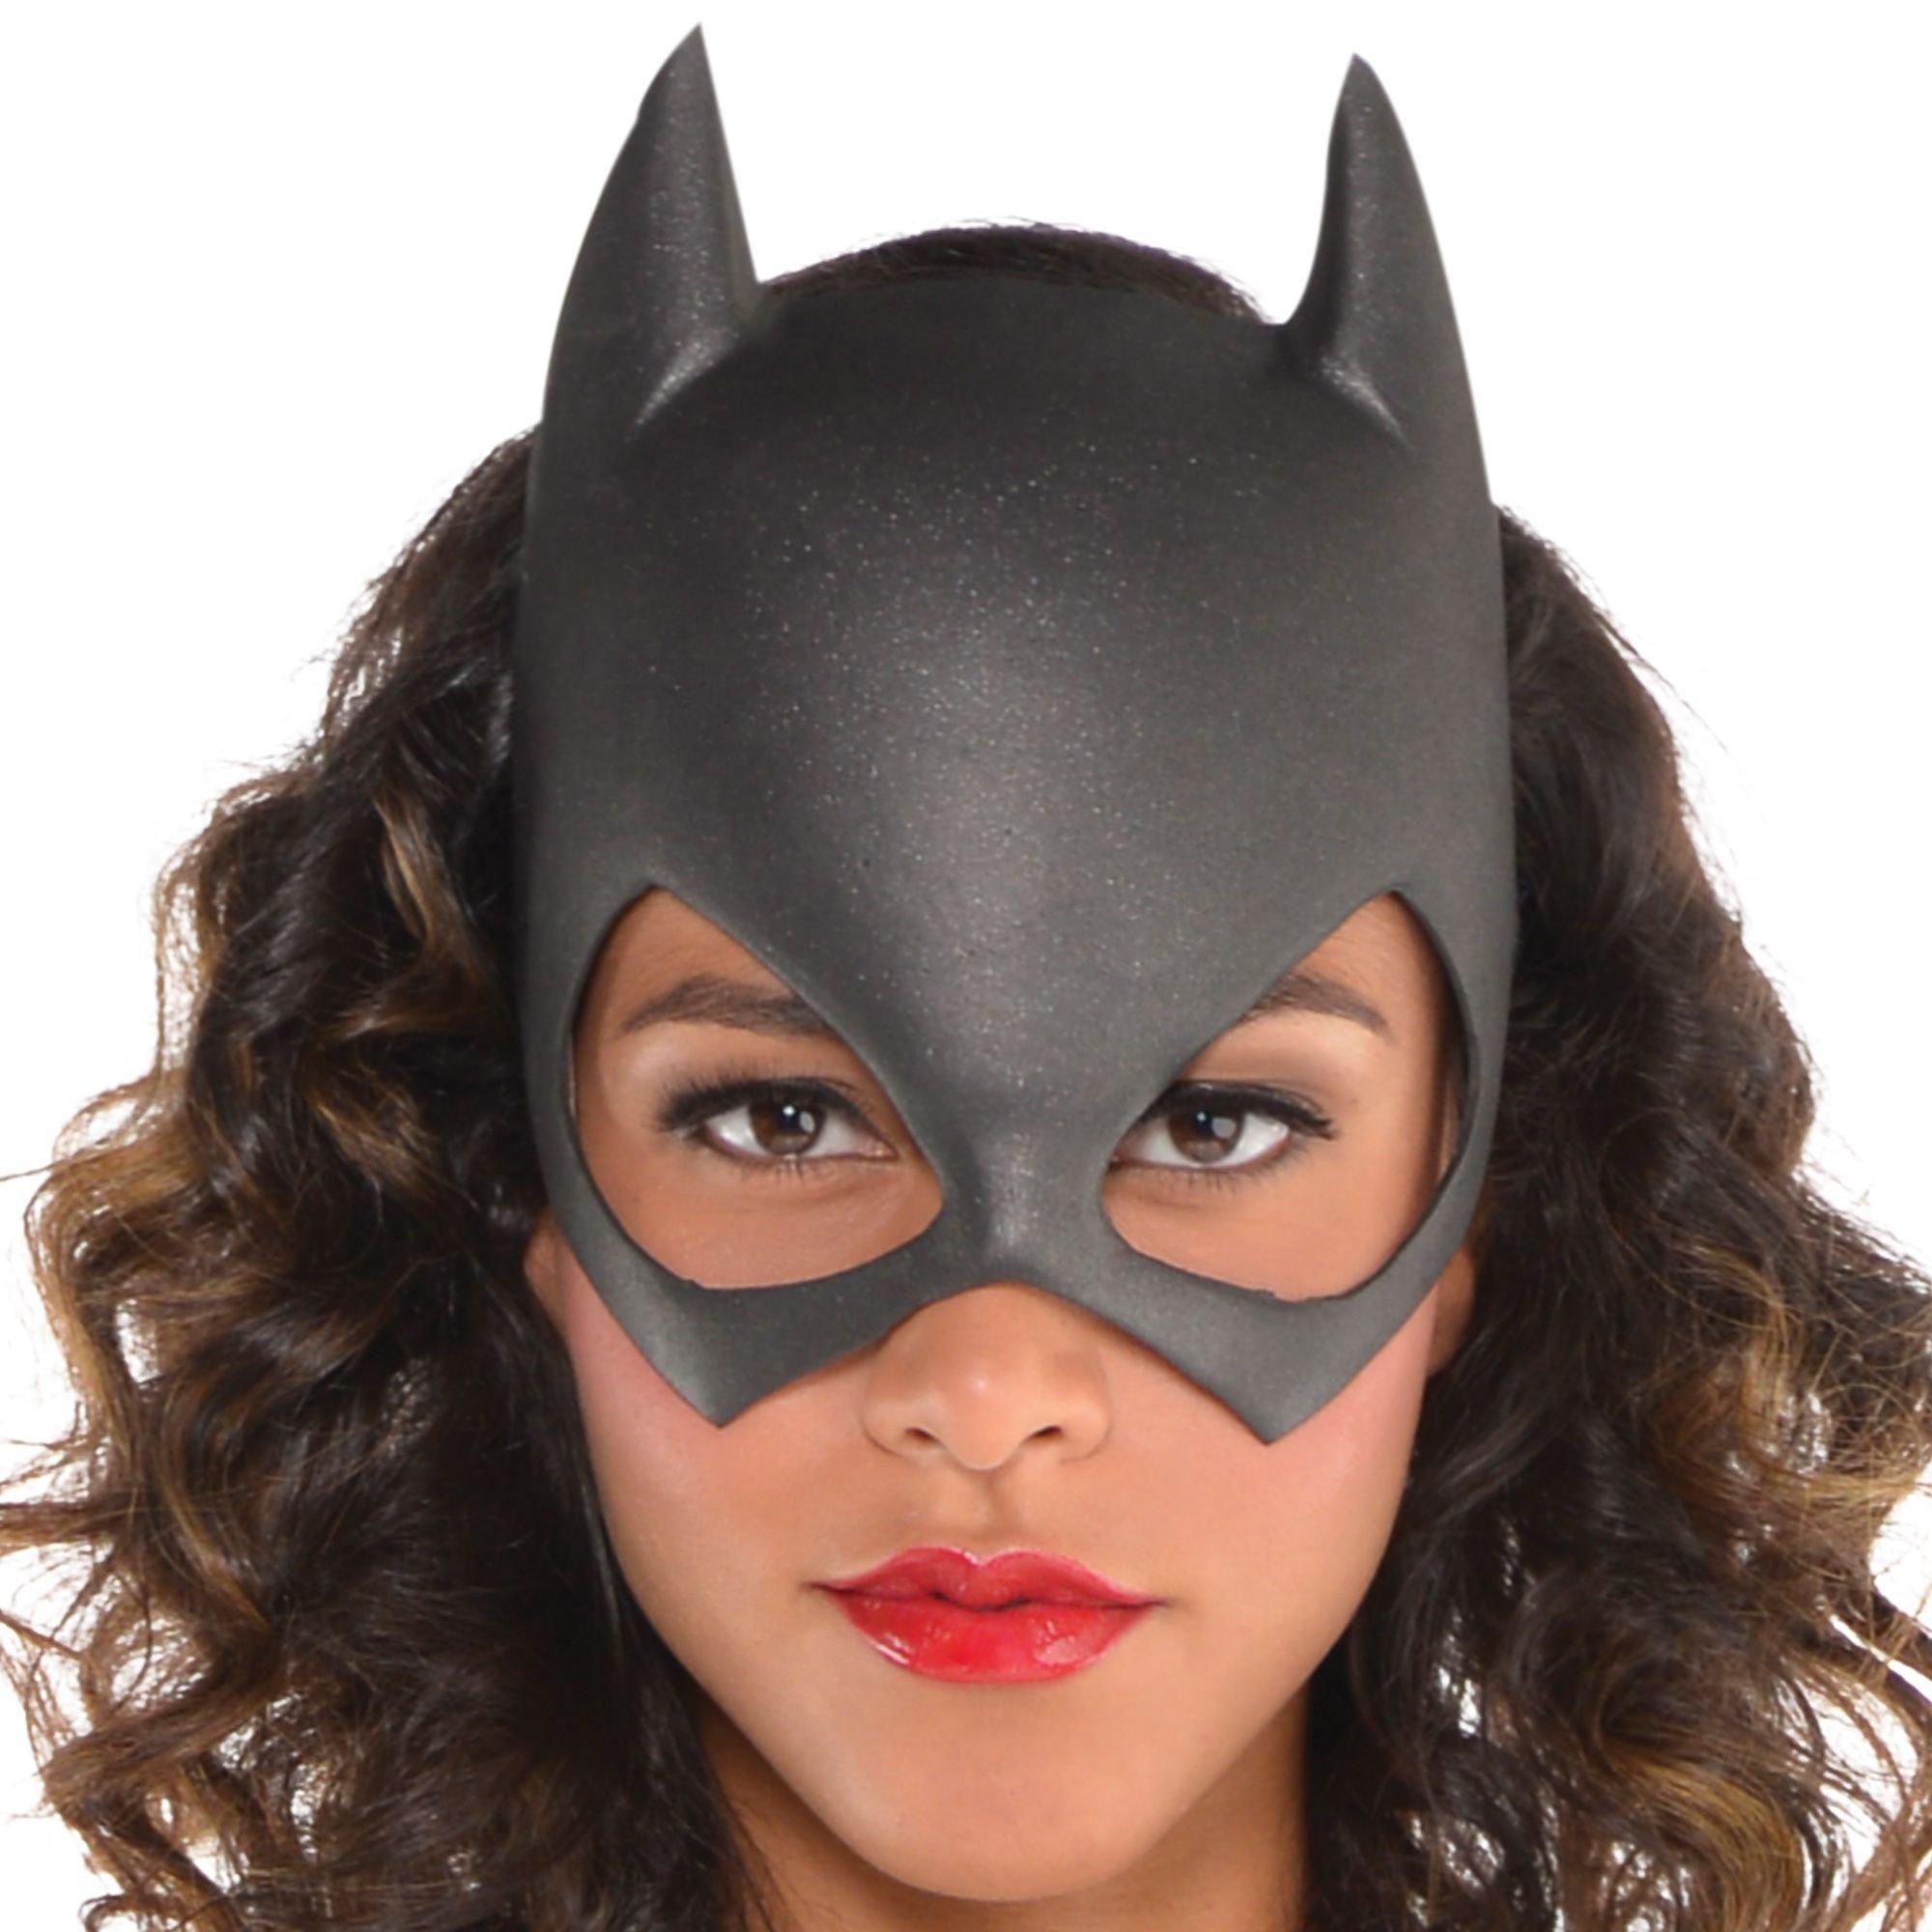 DC Comics Batman Batgirl Adult Costume